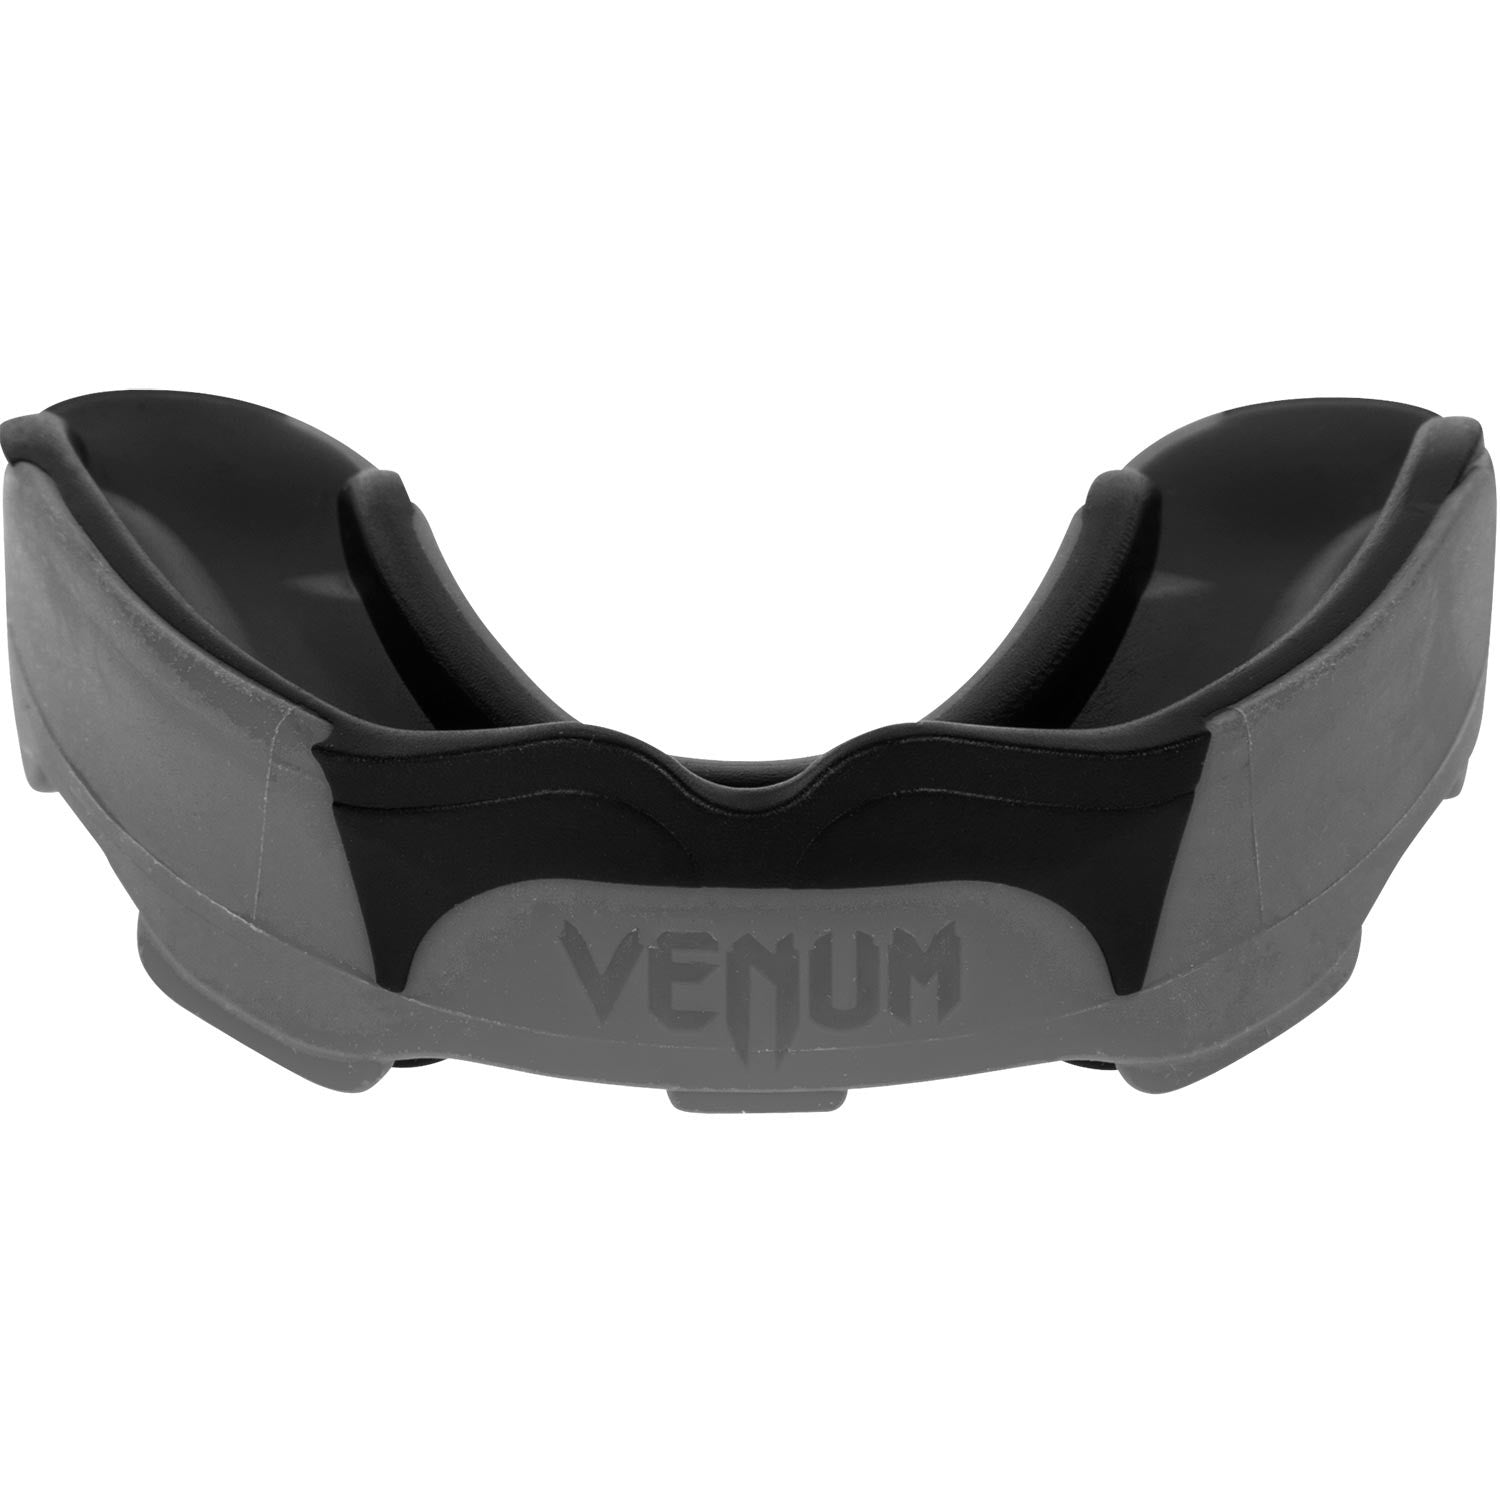 Chránič zubov Venum Predator - šedá/černá, VENUM-02574-203